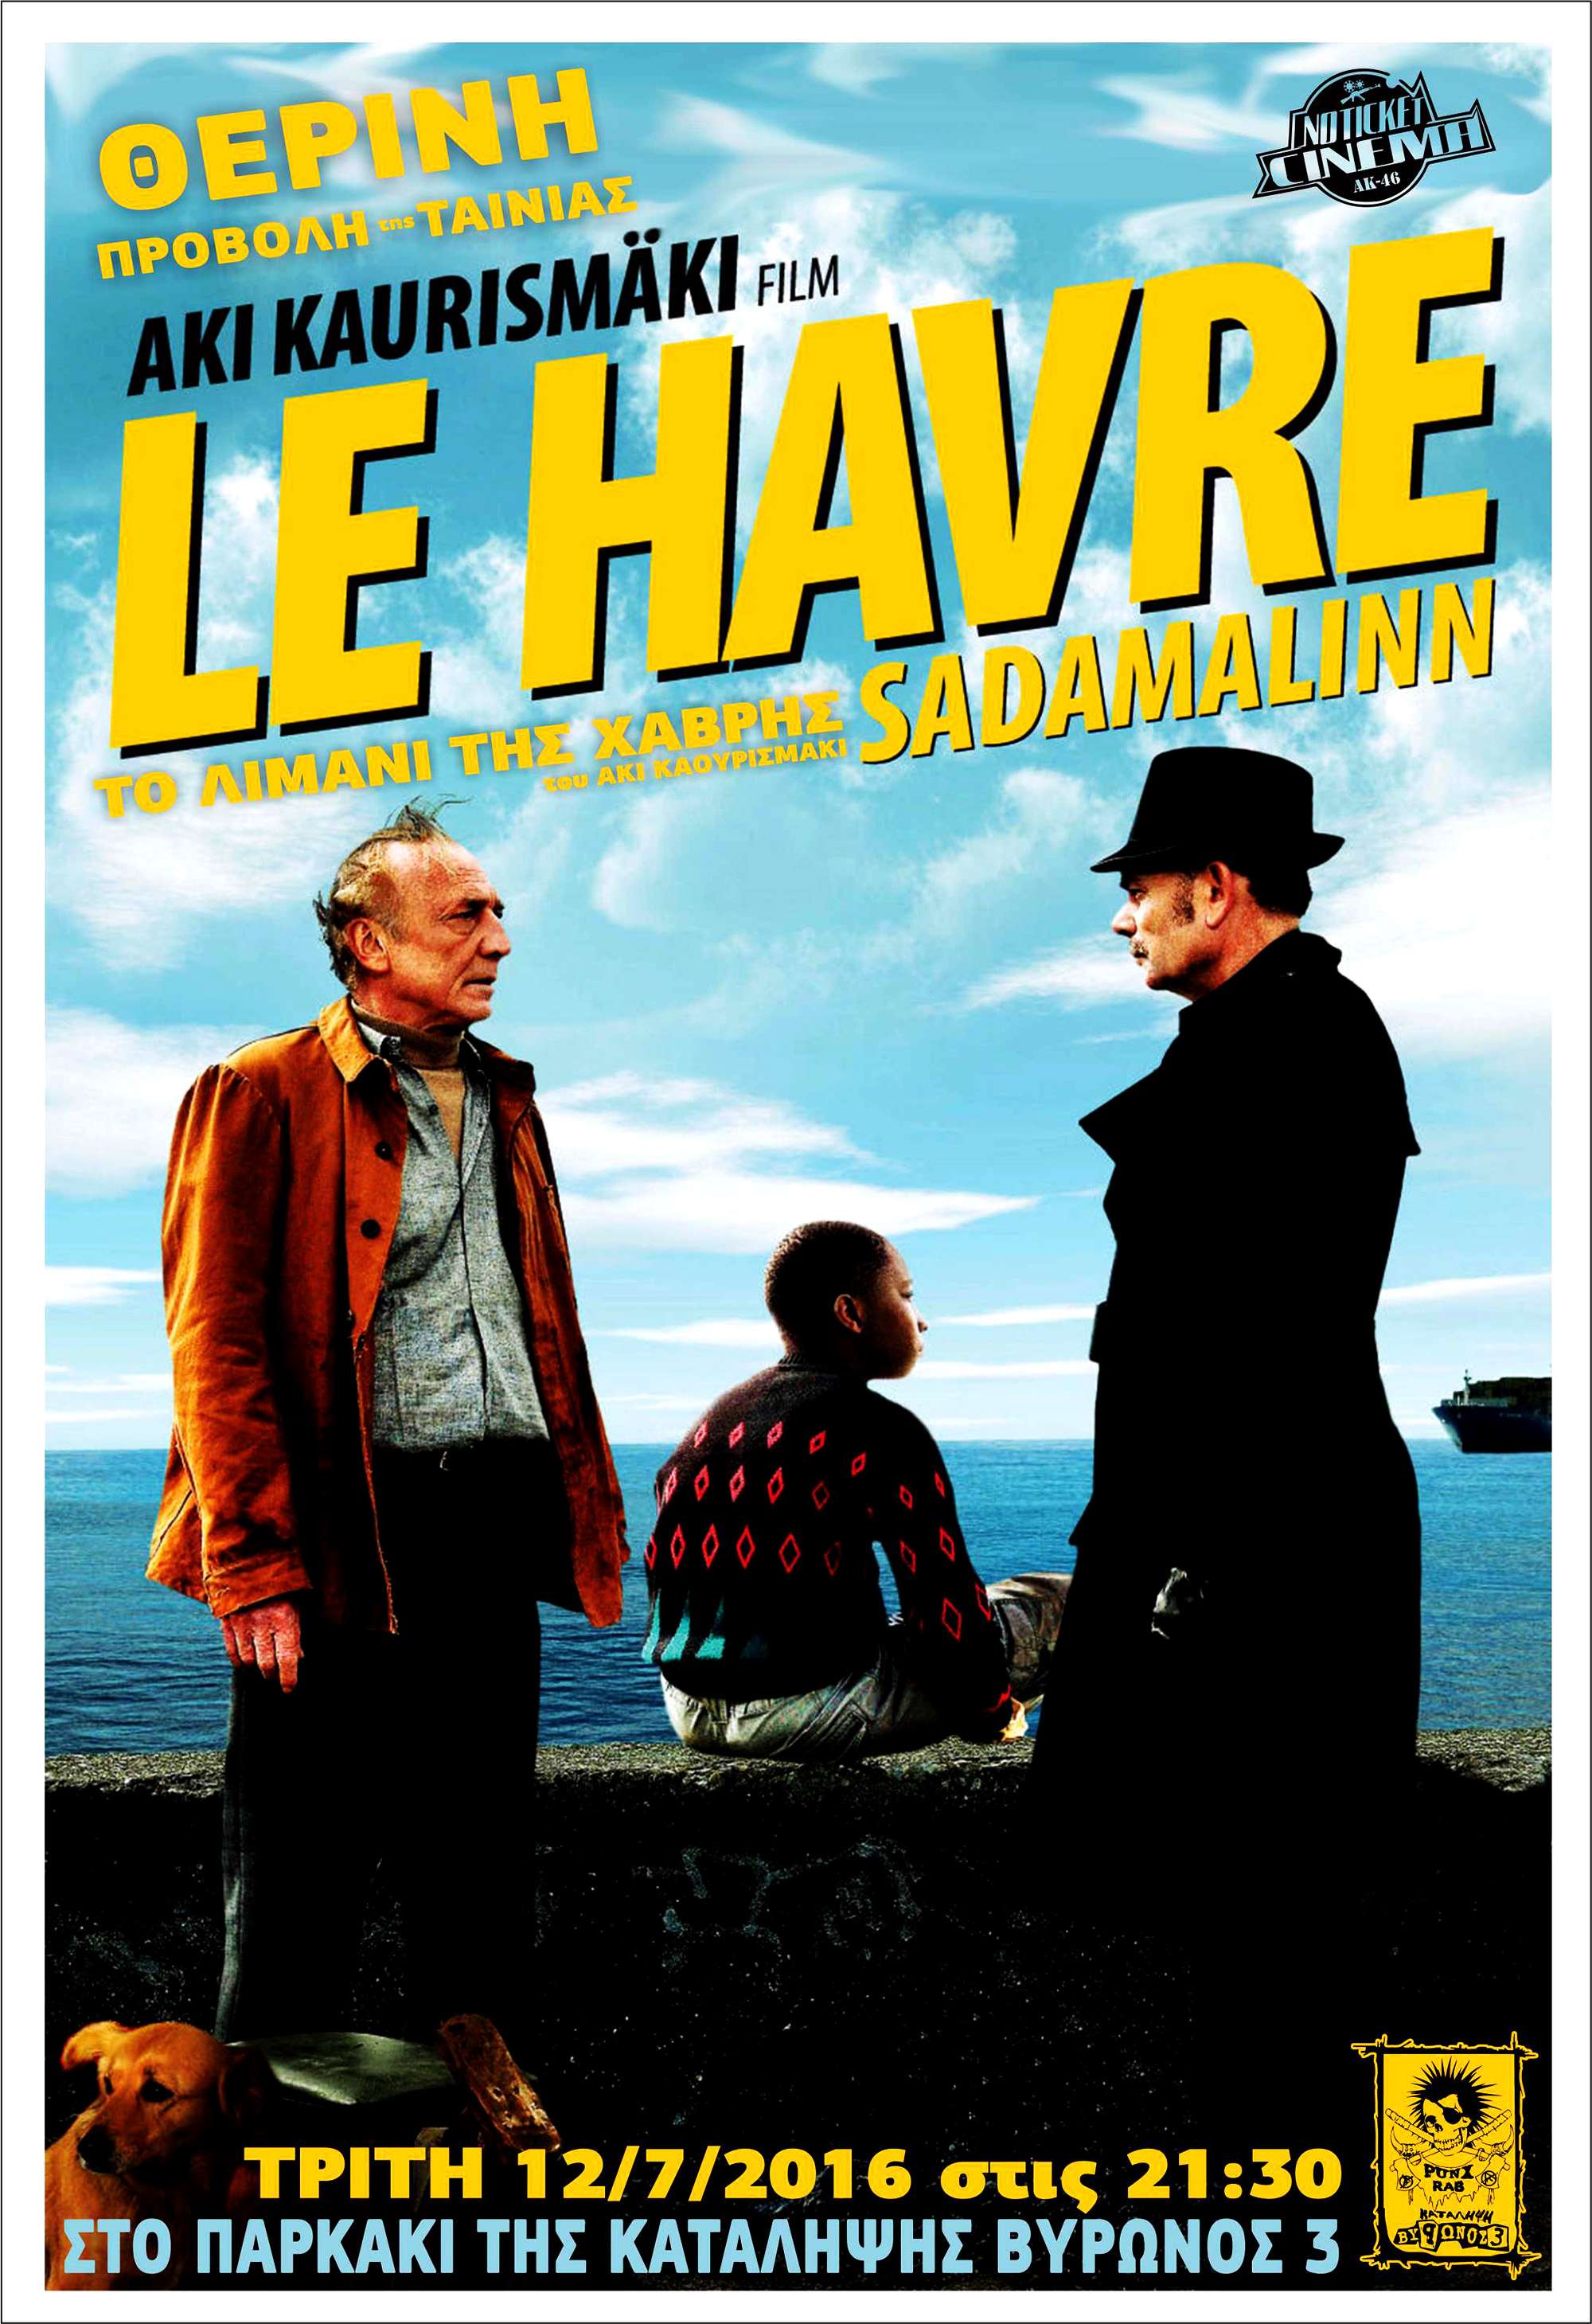 Καβάλα: Θερινή προβολή της ταινίας Le Havre (Το λιμάνι της Χάβρης 2011) του Aki Kaurismäki